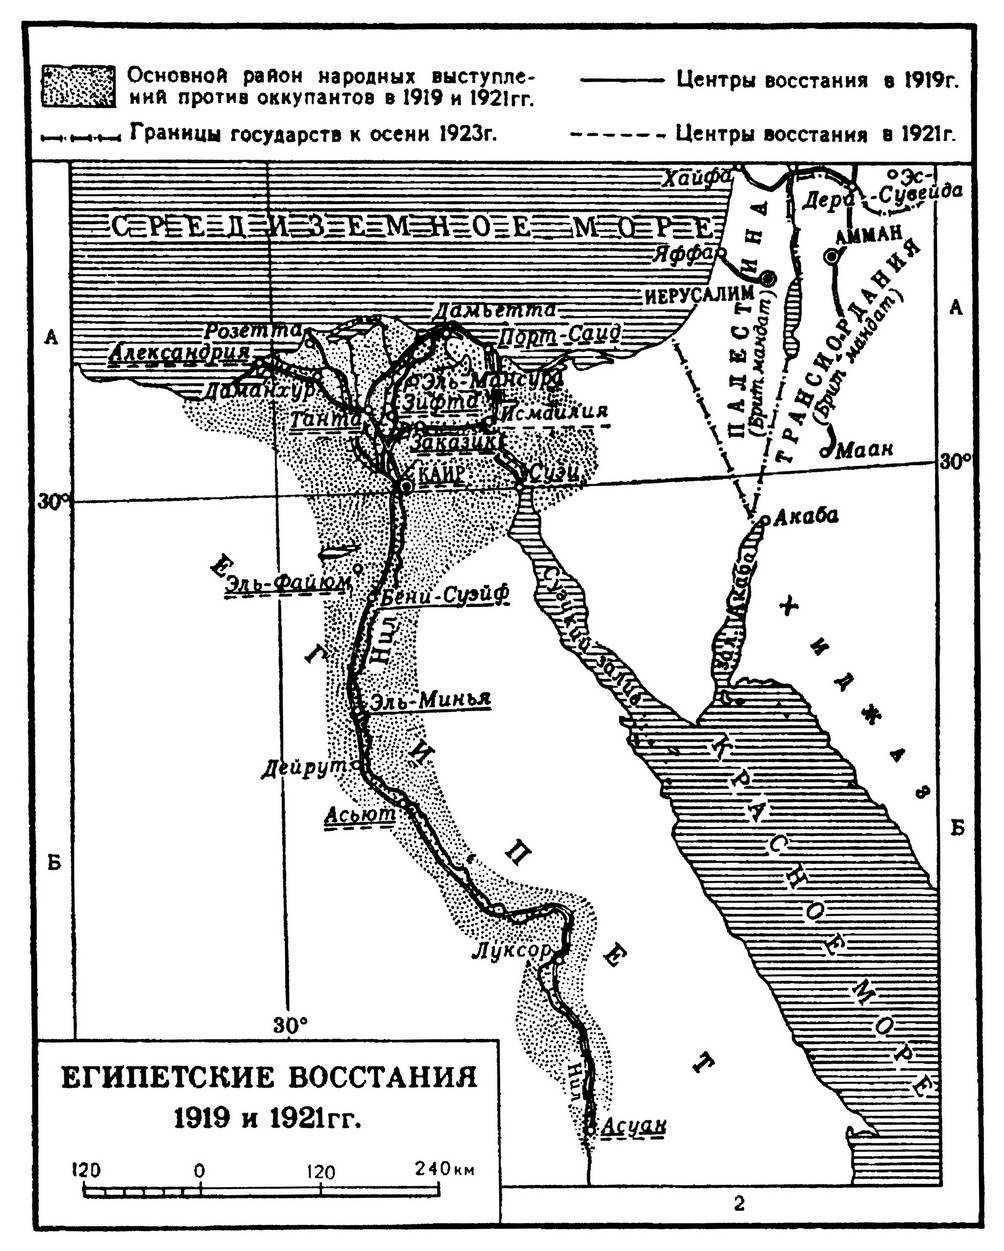 ЕГИПЕТСКИЕ ВОССТАНИЯ 1919, 1921